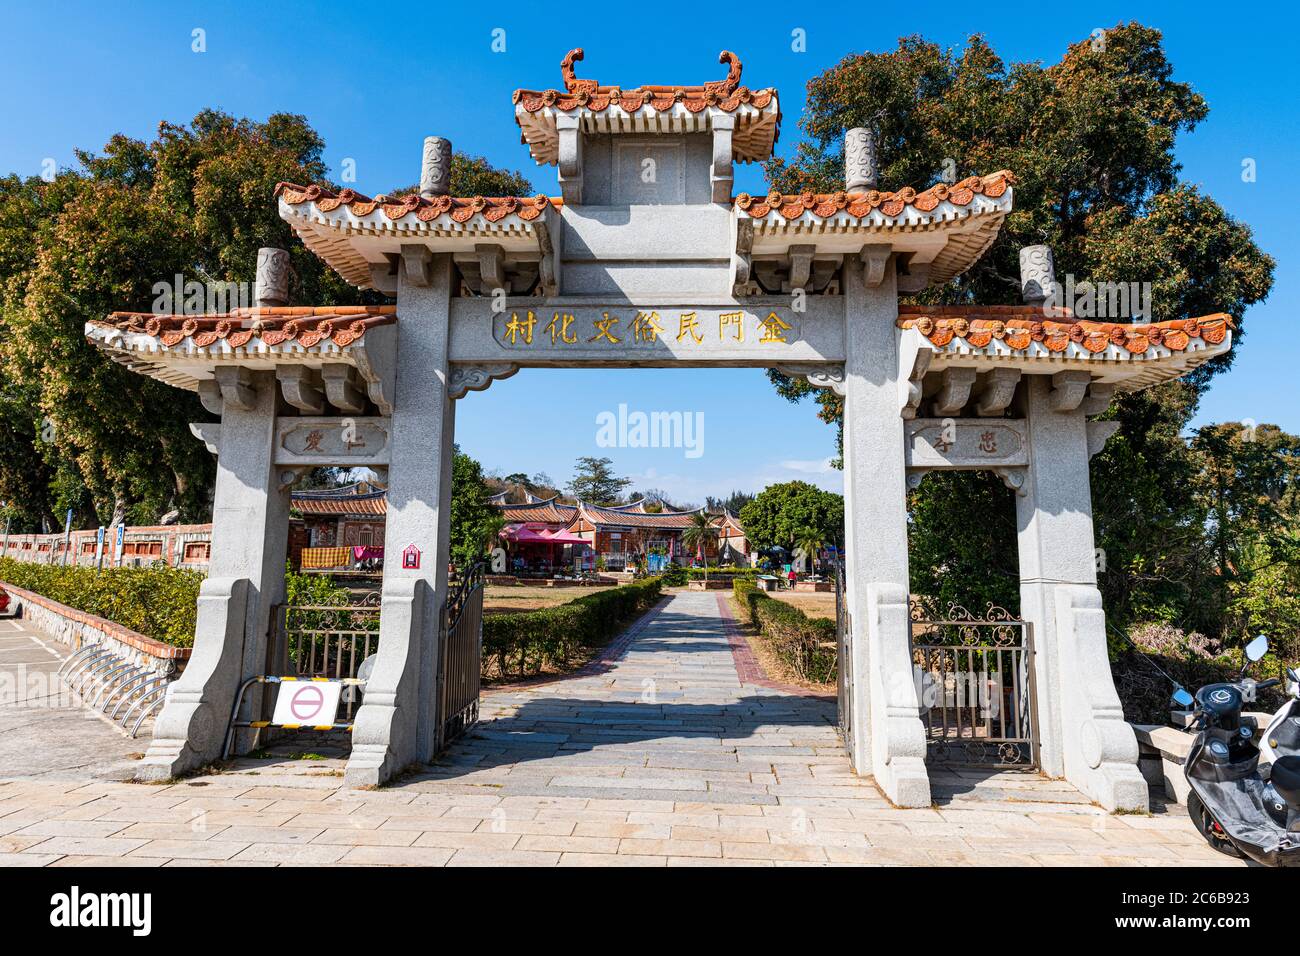 Entrée au village culturel populaire de Shanhou, île de Kinmen, Taïwan, Asie Banque D'Images